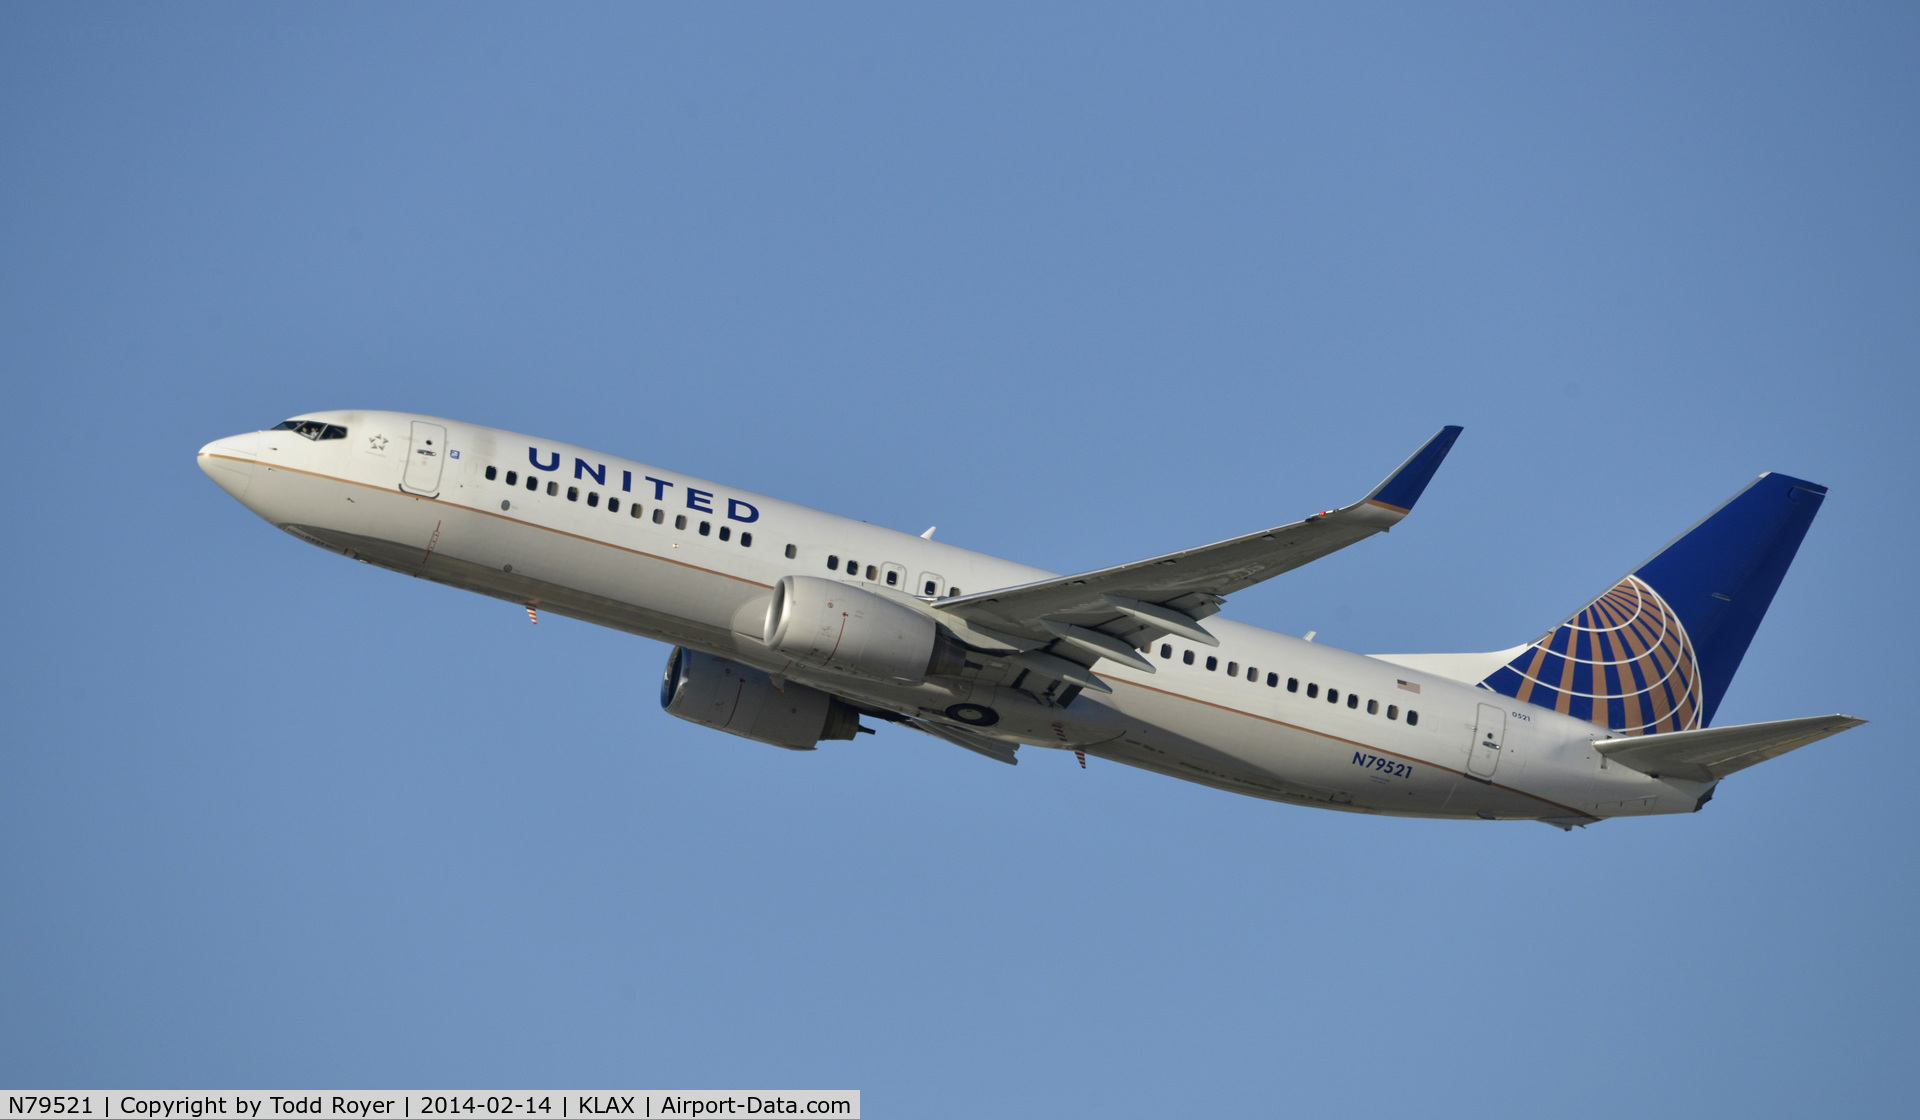 N79521, 2010 Boeing 737-824 C/N 31662, Departing LAX on 25R